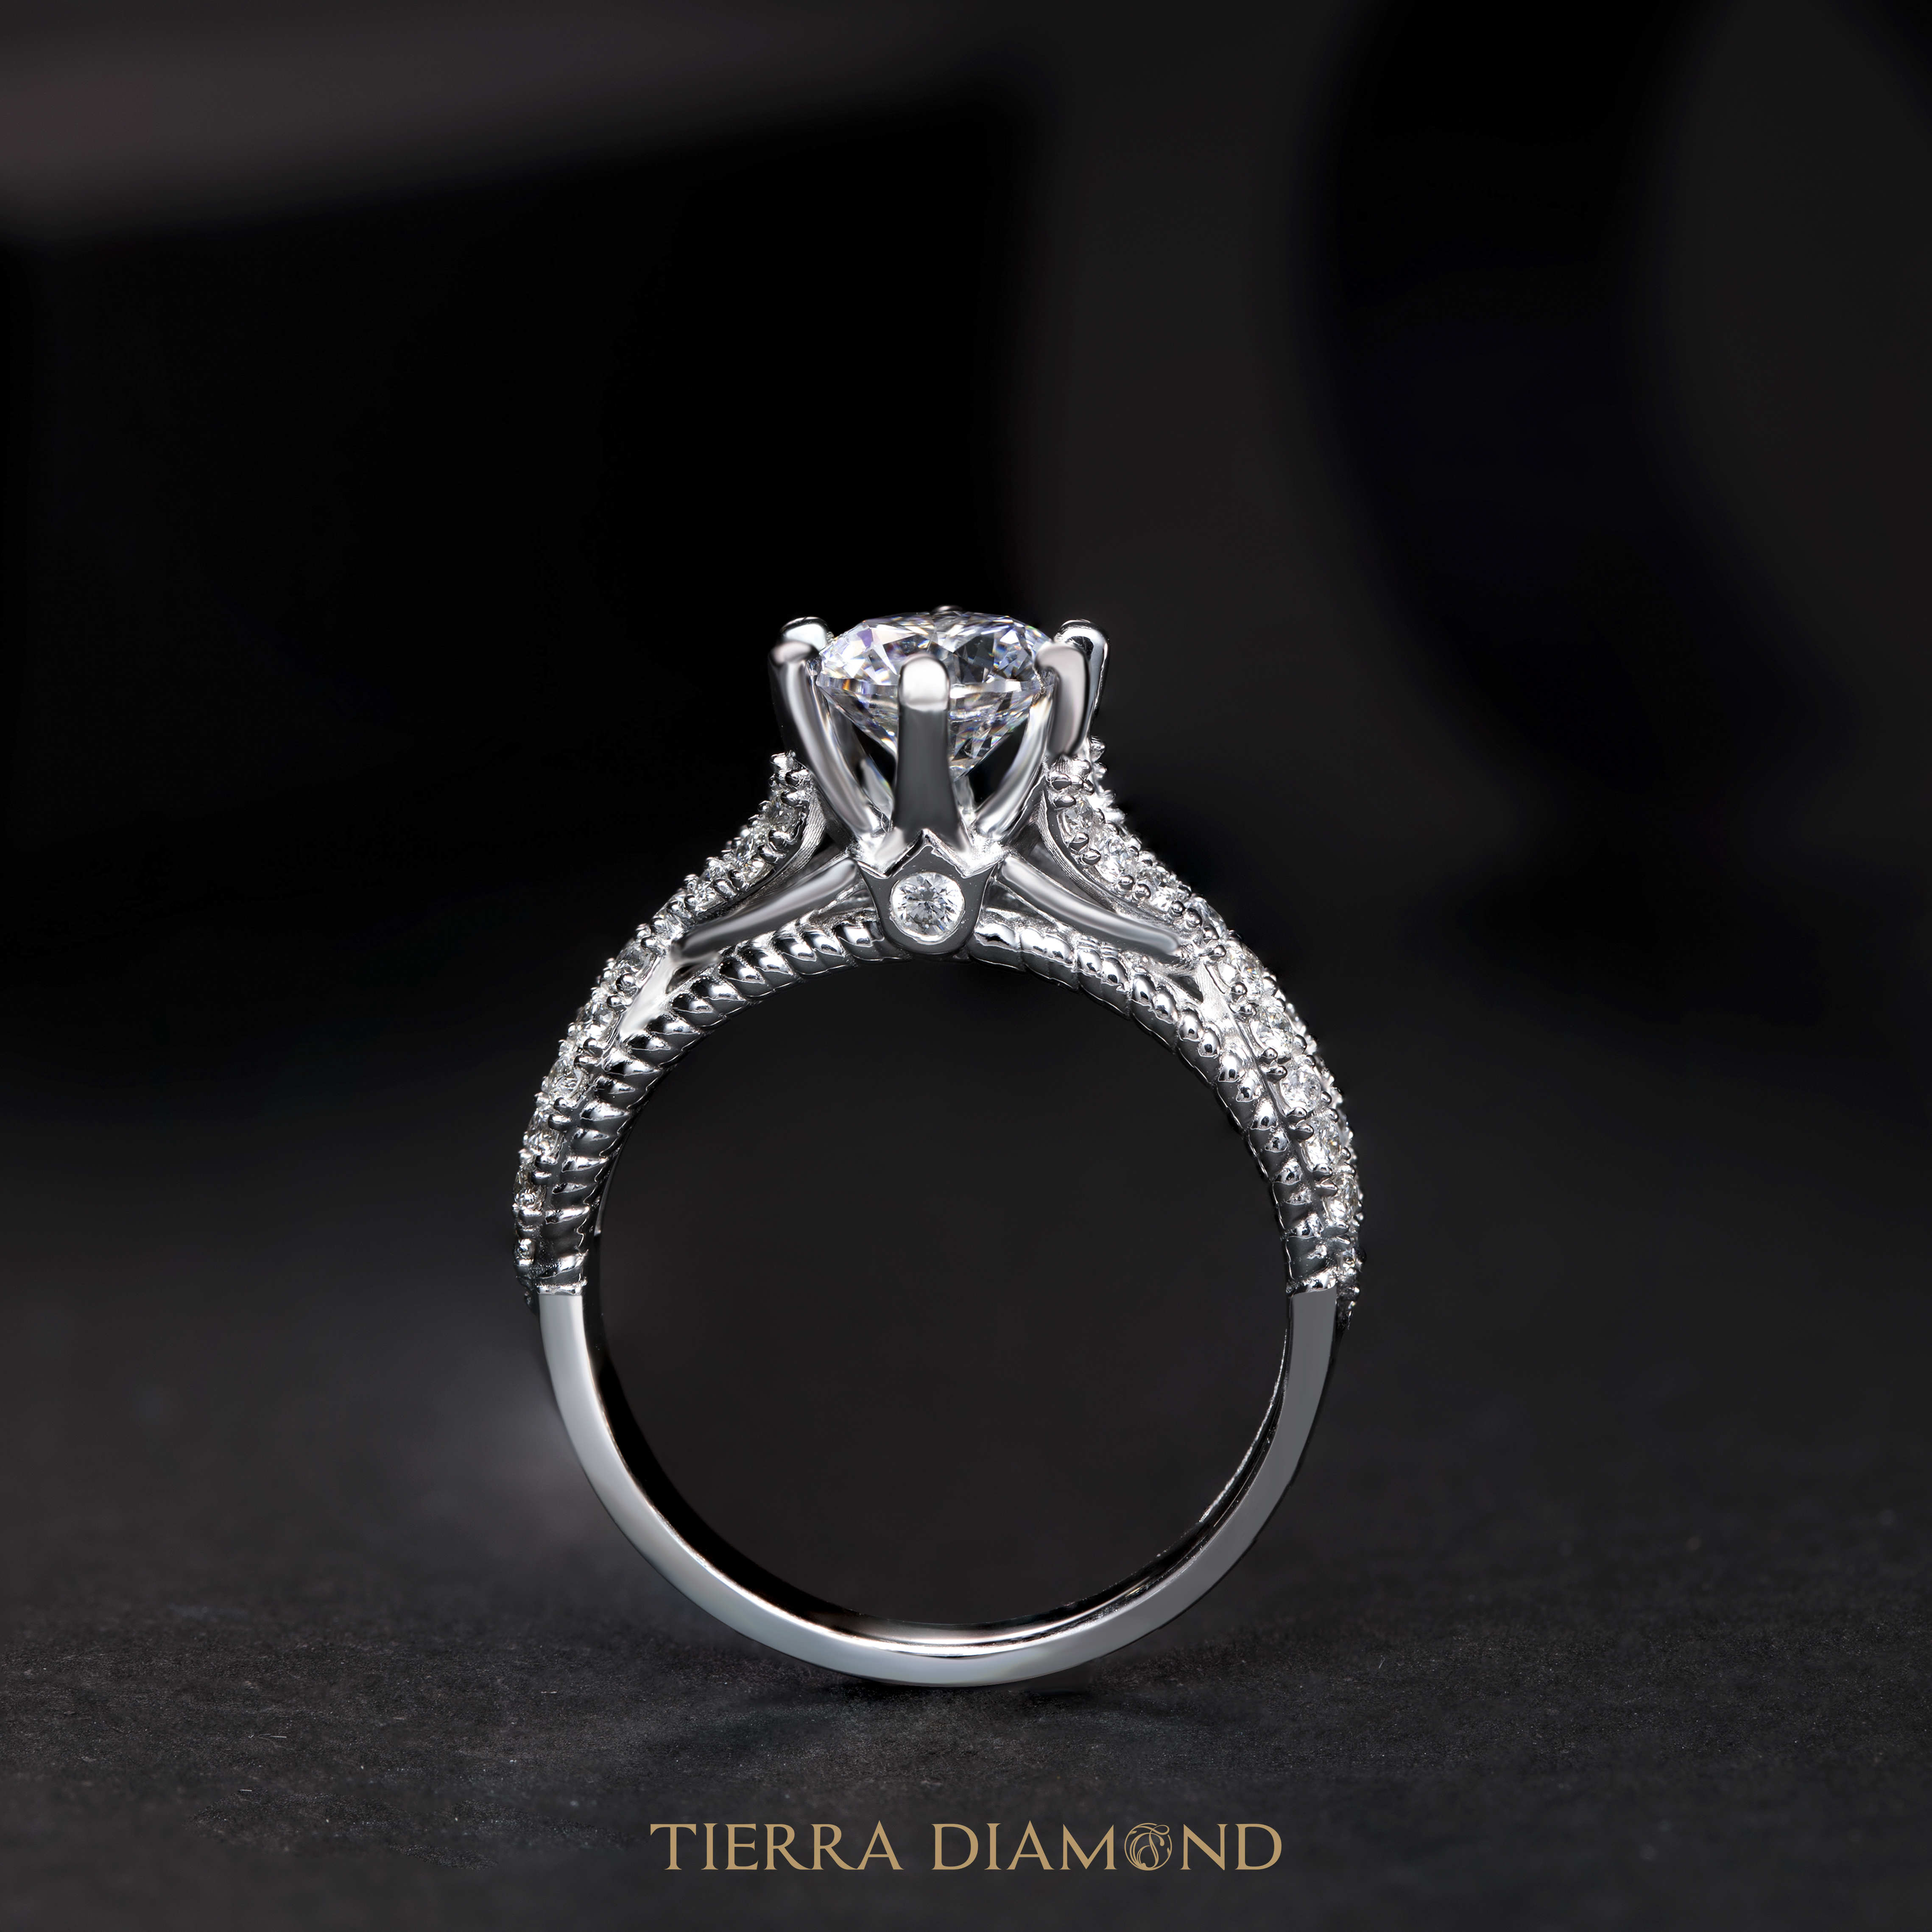 Bộ sưu tập nhẫn kim cương Royal cho các quý cô sang chảnh - Vẻ đẹp của sự kiêu sa - 2